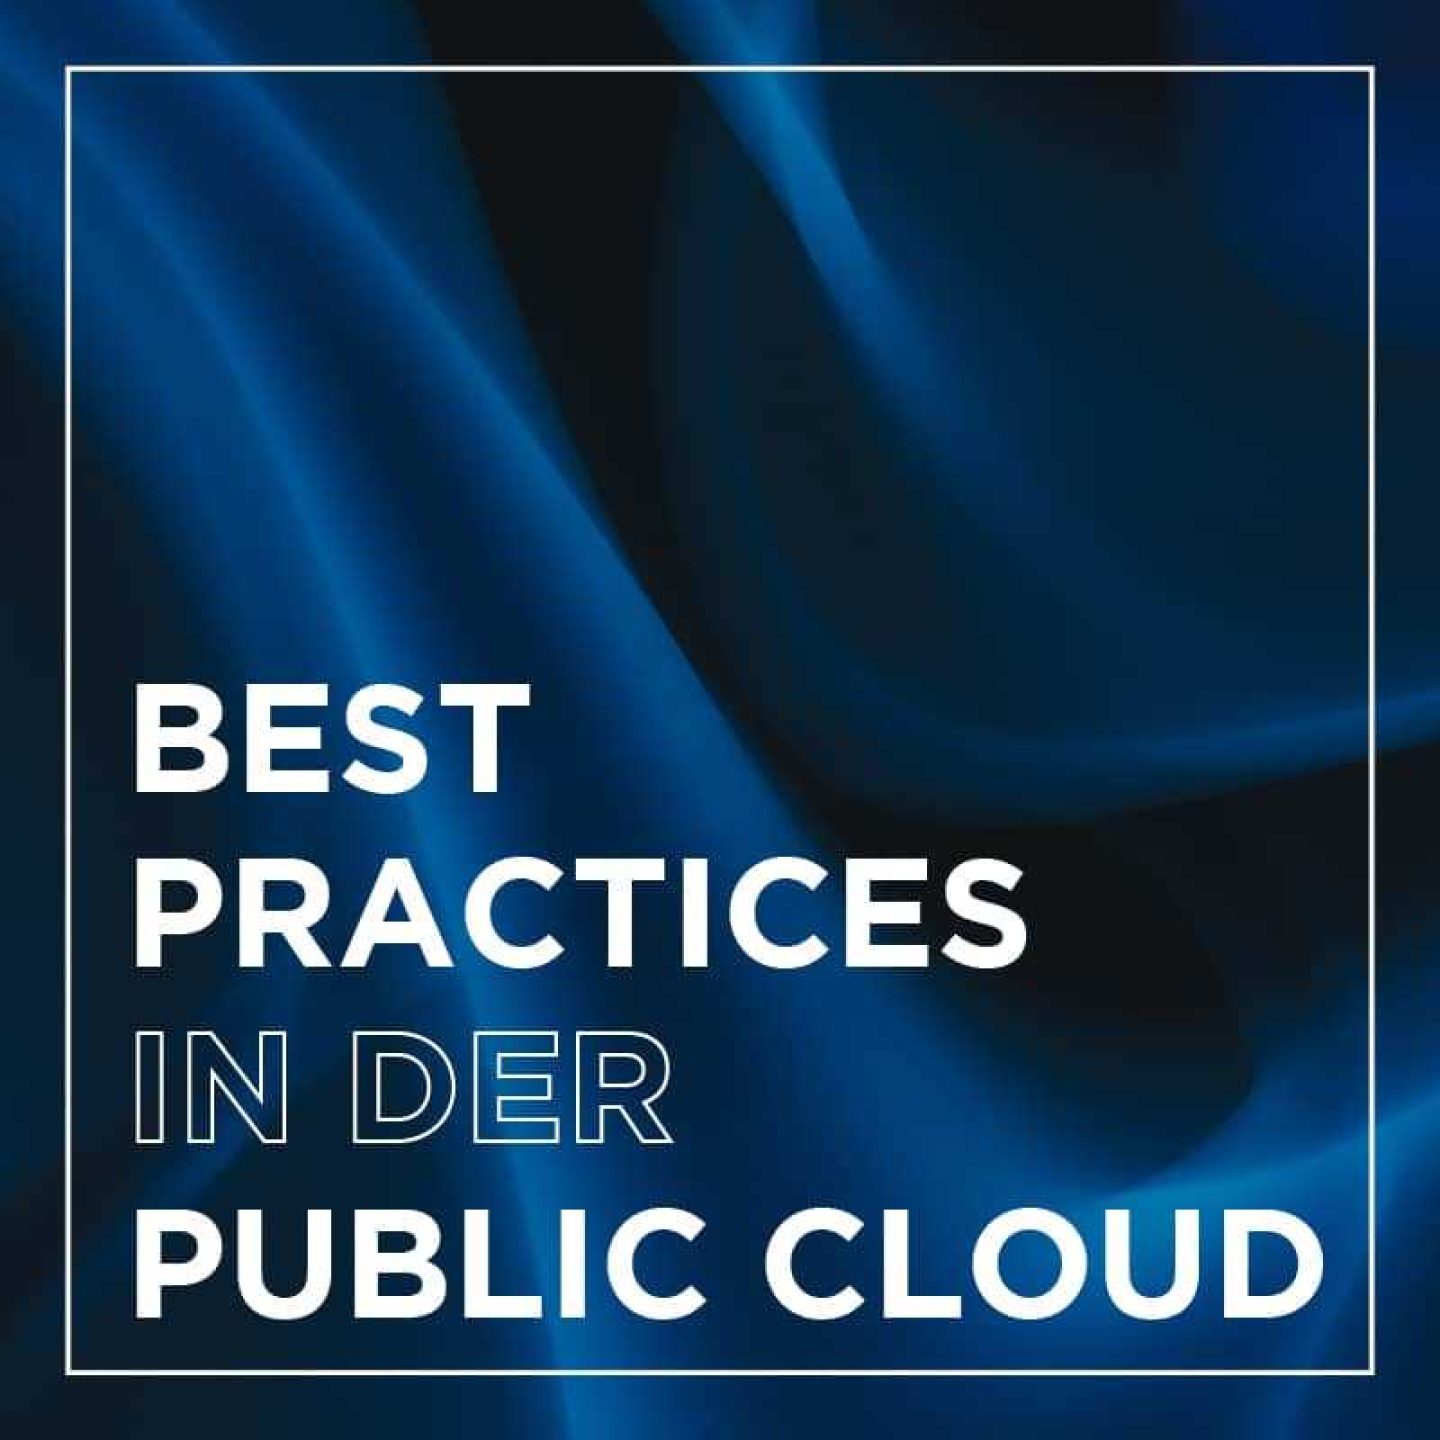 Kachel insight praxisedition best practices public cloud